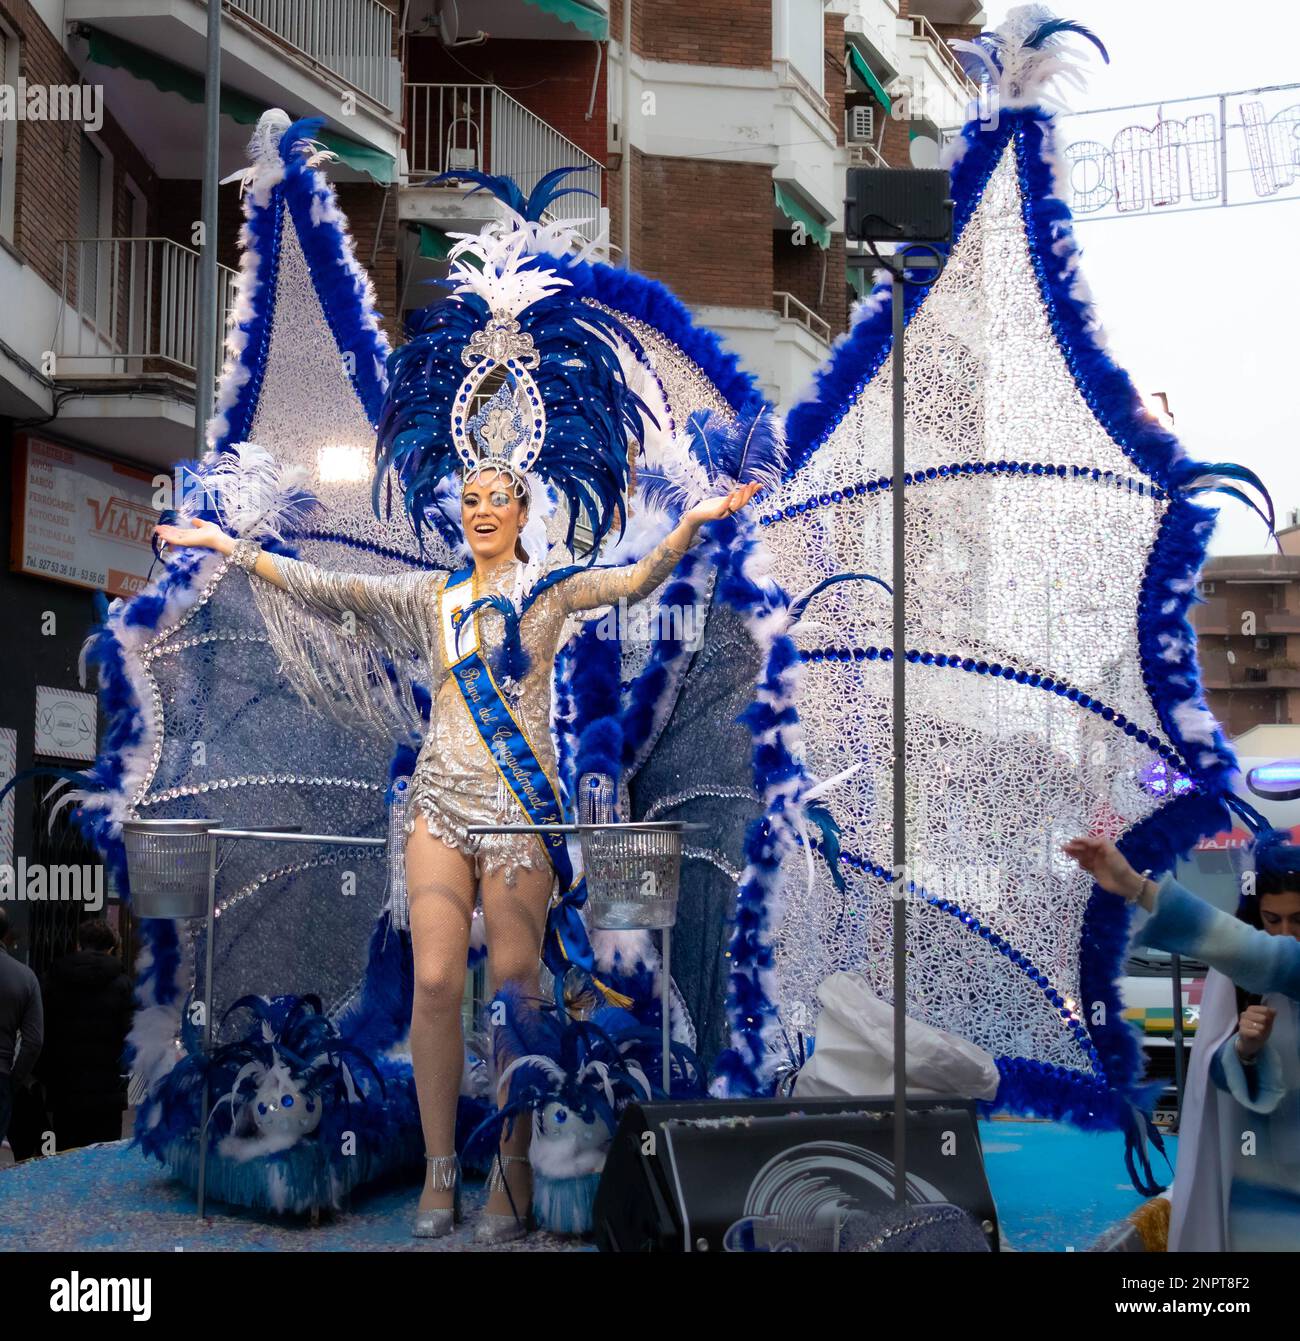 Gente feliz desfilando y bailando, con disfraces abstractos y coloridos en el desfile de Carnaval de Navalmoral de la Mata, España Stock Photo